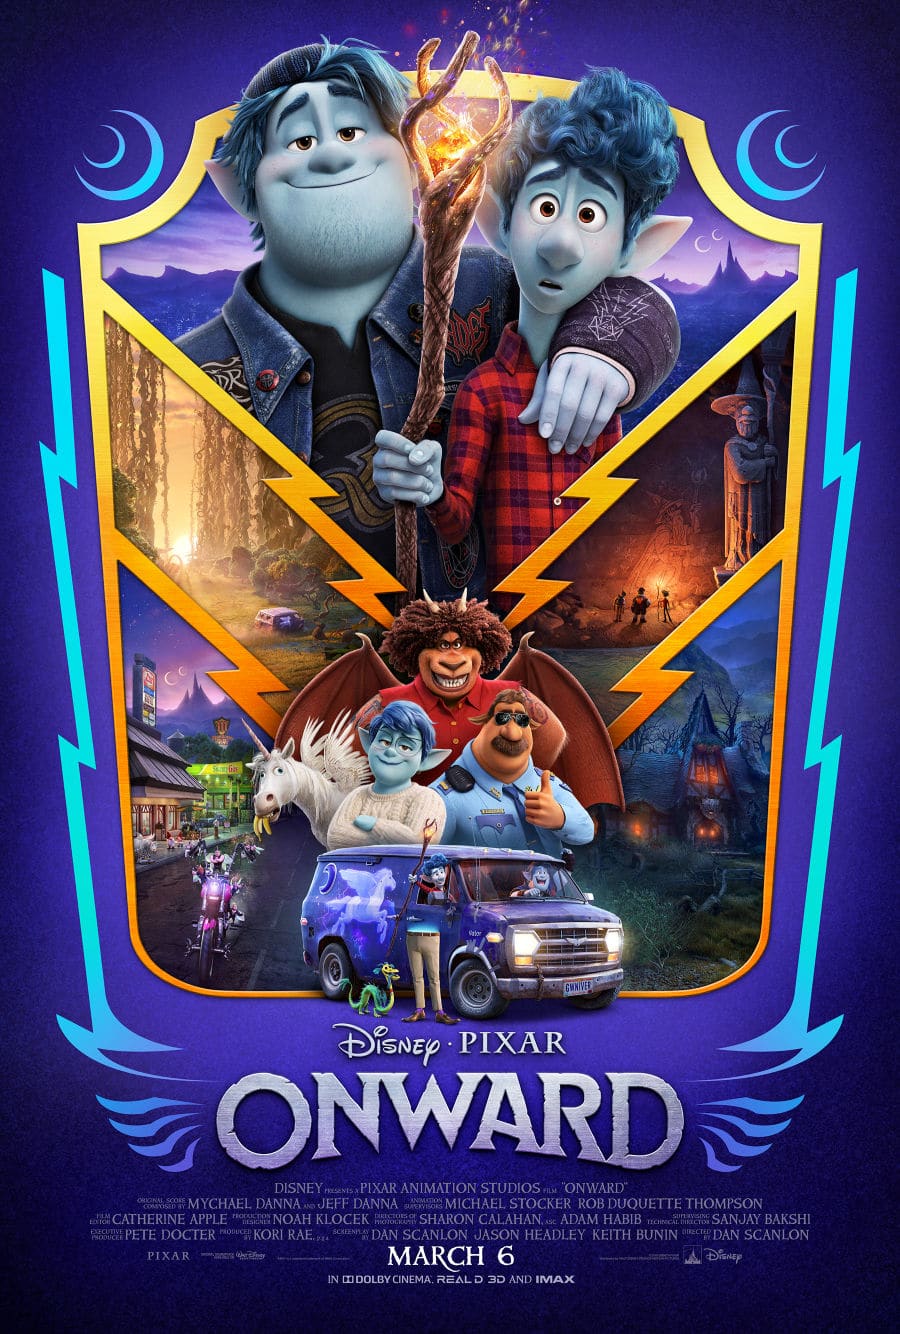 Disney Pixar Onward movie poster in Onward parents guide